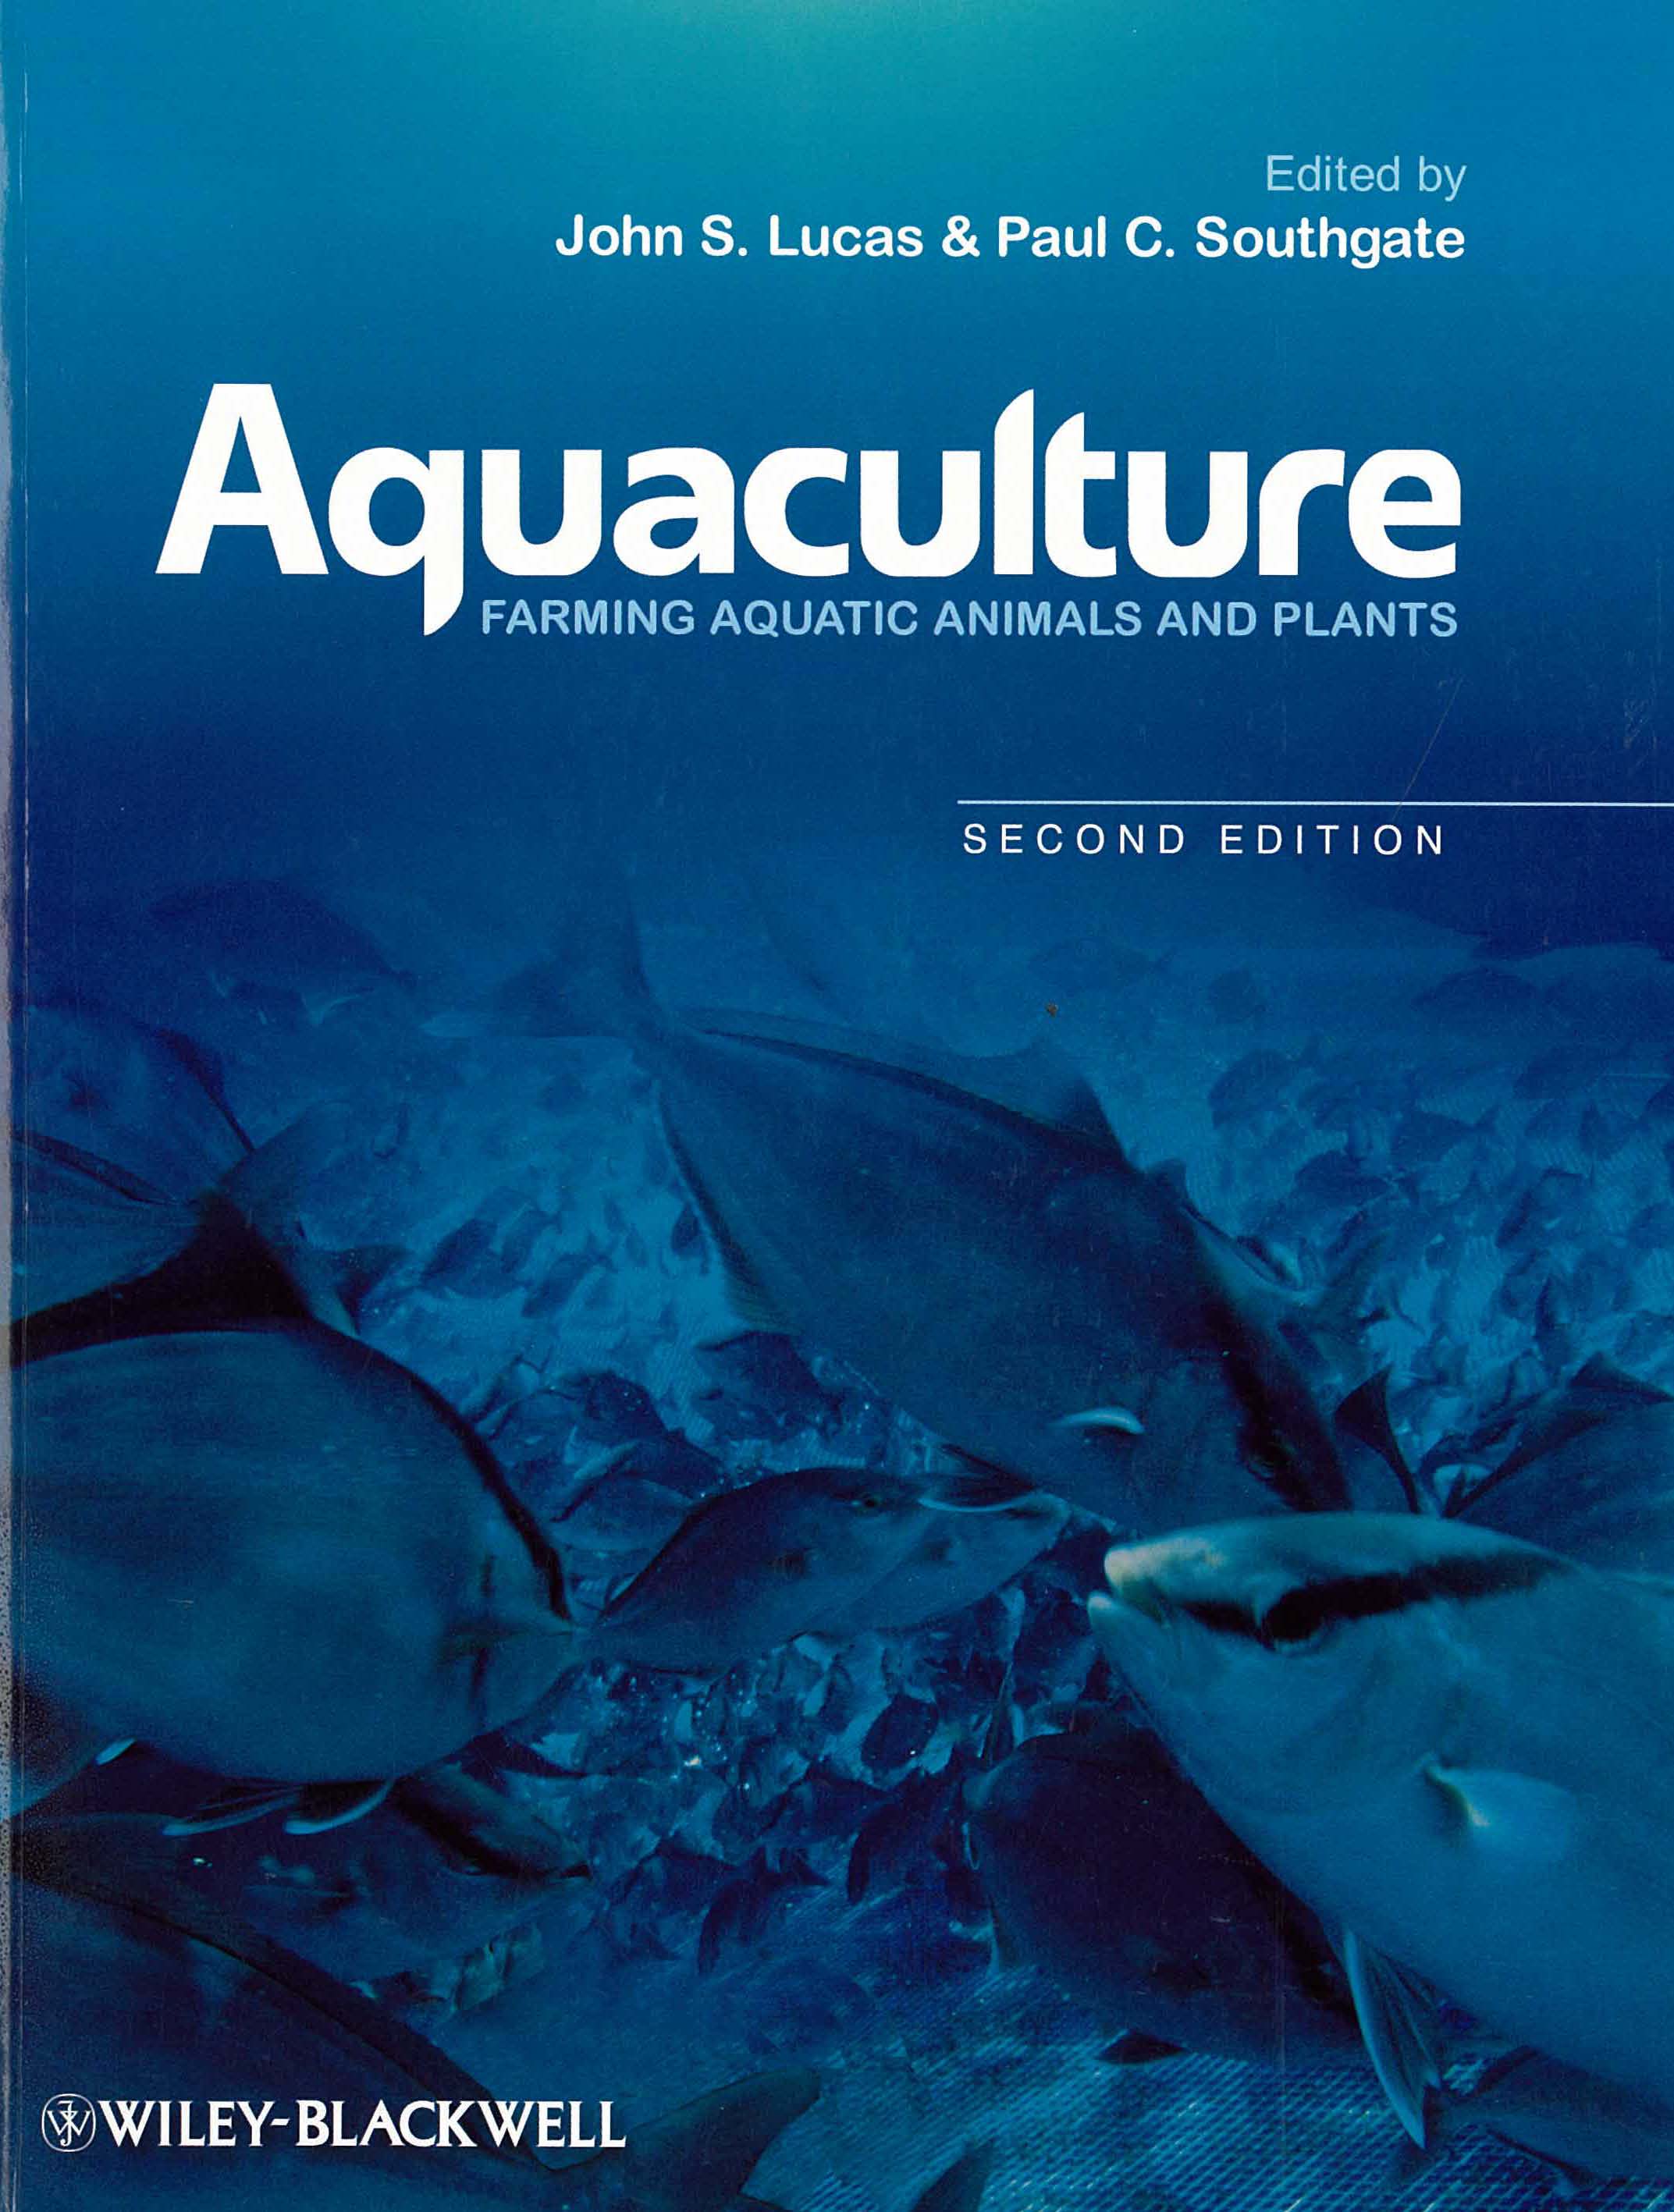 Aquaculture: farming aquatic animals and plants